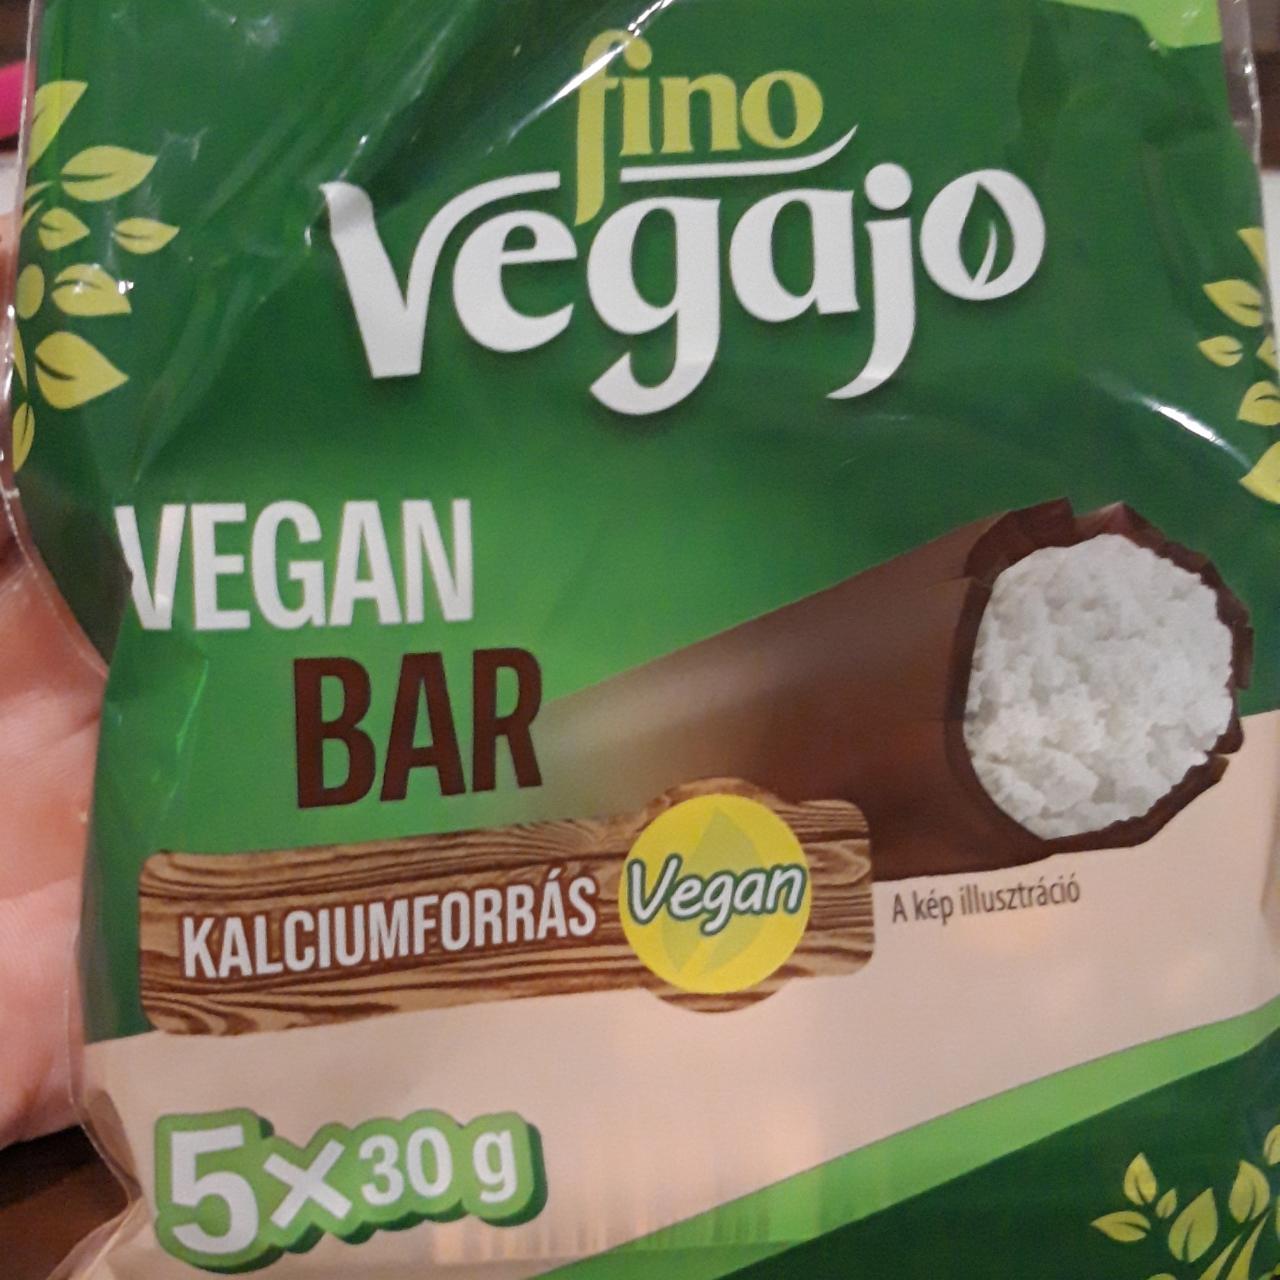 Képek - Vegajo vegan bar Fino